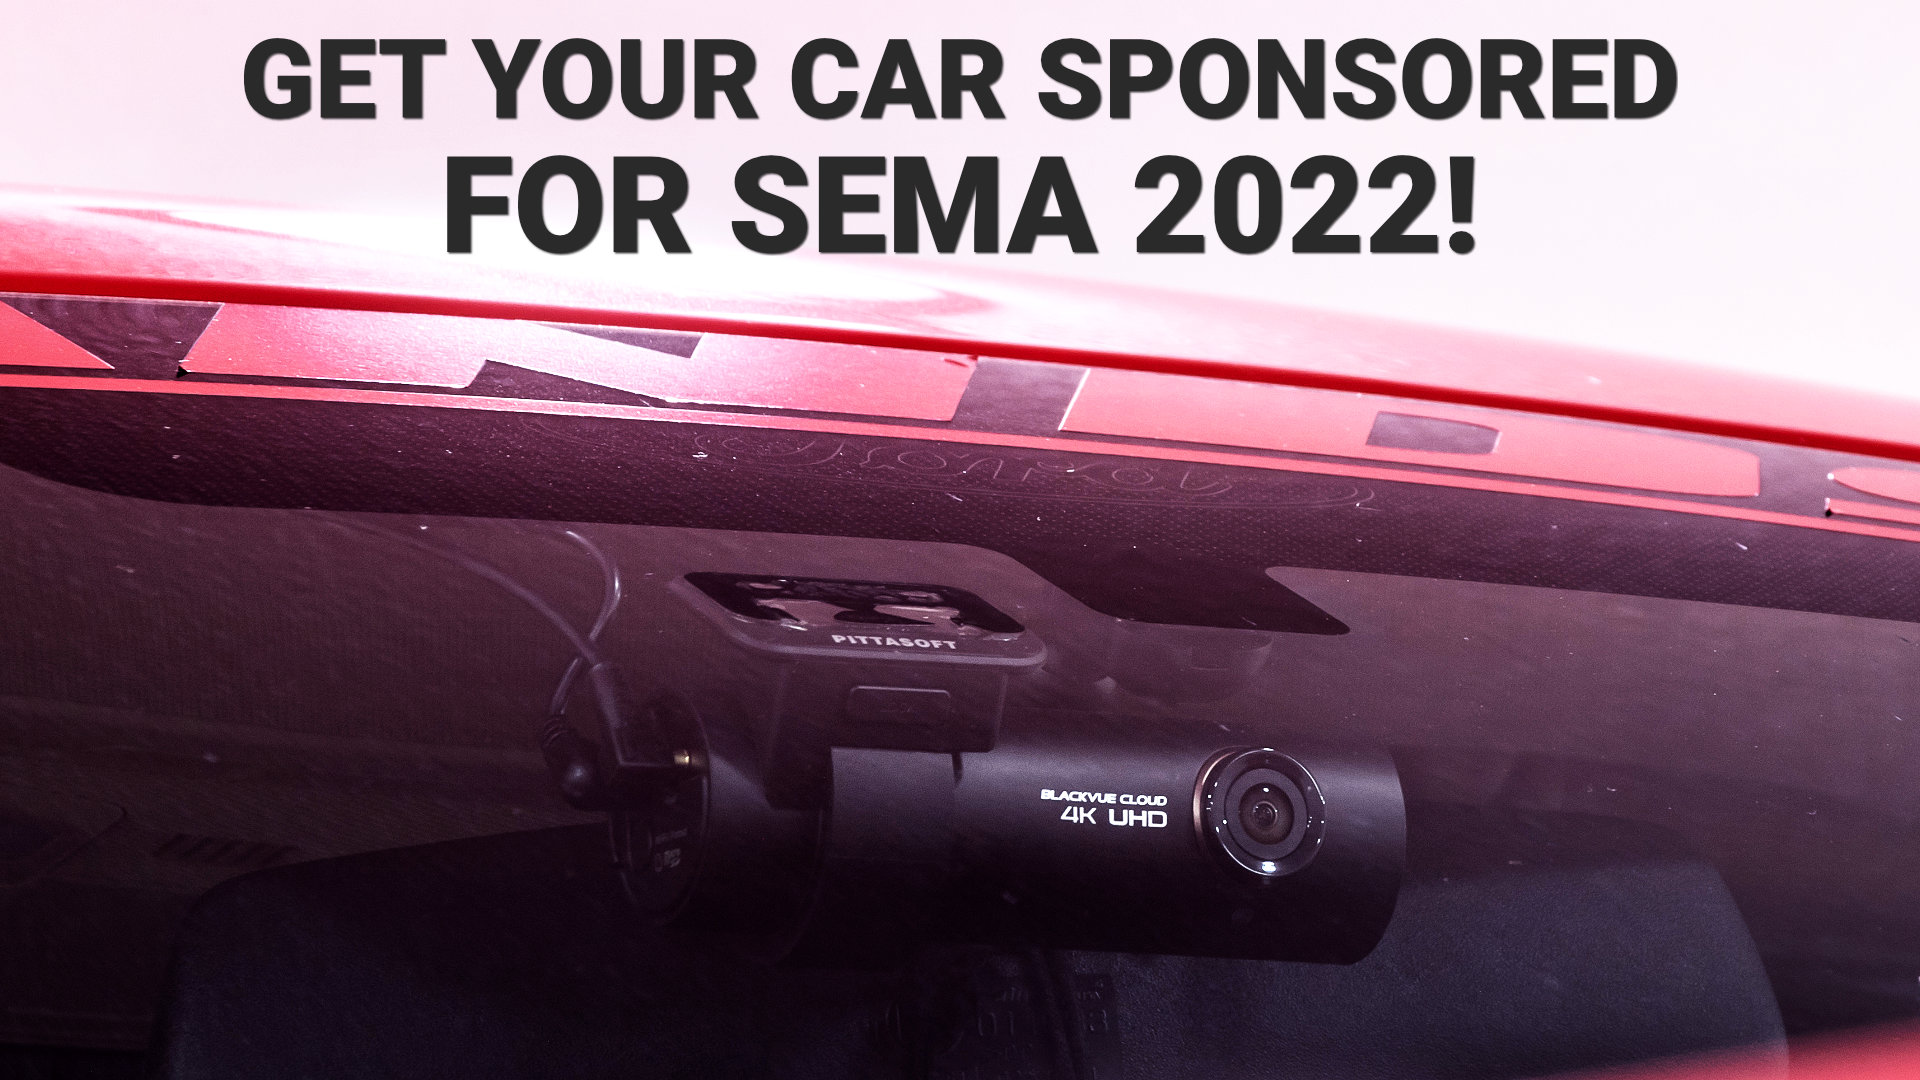 Get a Free Dash Cam For Your SEMA 2022 Car!